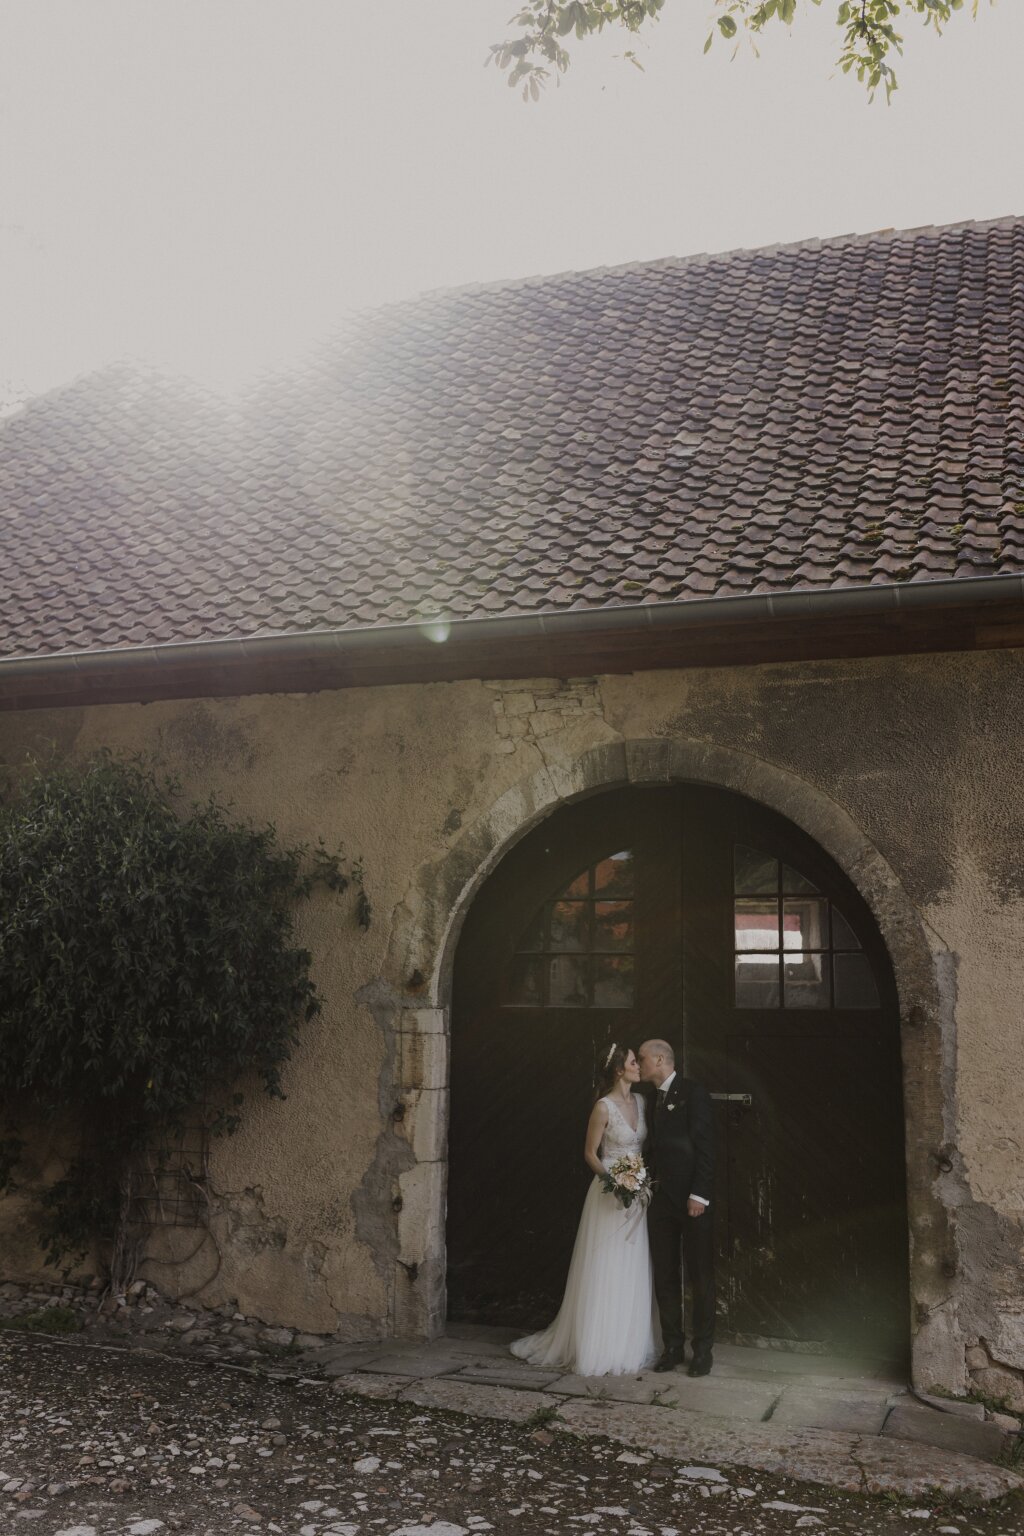 Ein Brautpaar küsst sich verliebt vor einer alten Scheunentür. Das Abendlich scheint über das Dach der Scheune und erzeugt tolle Lichteffekte.